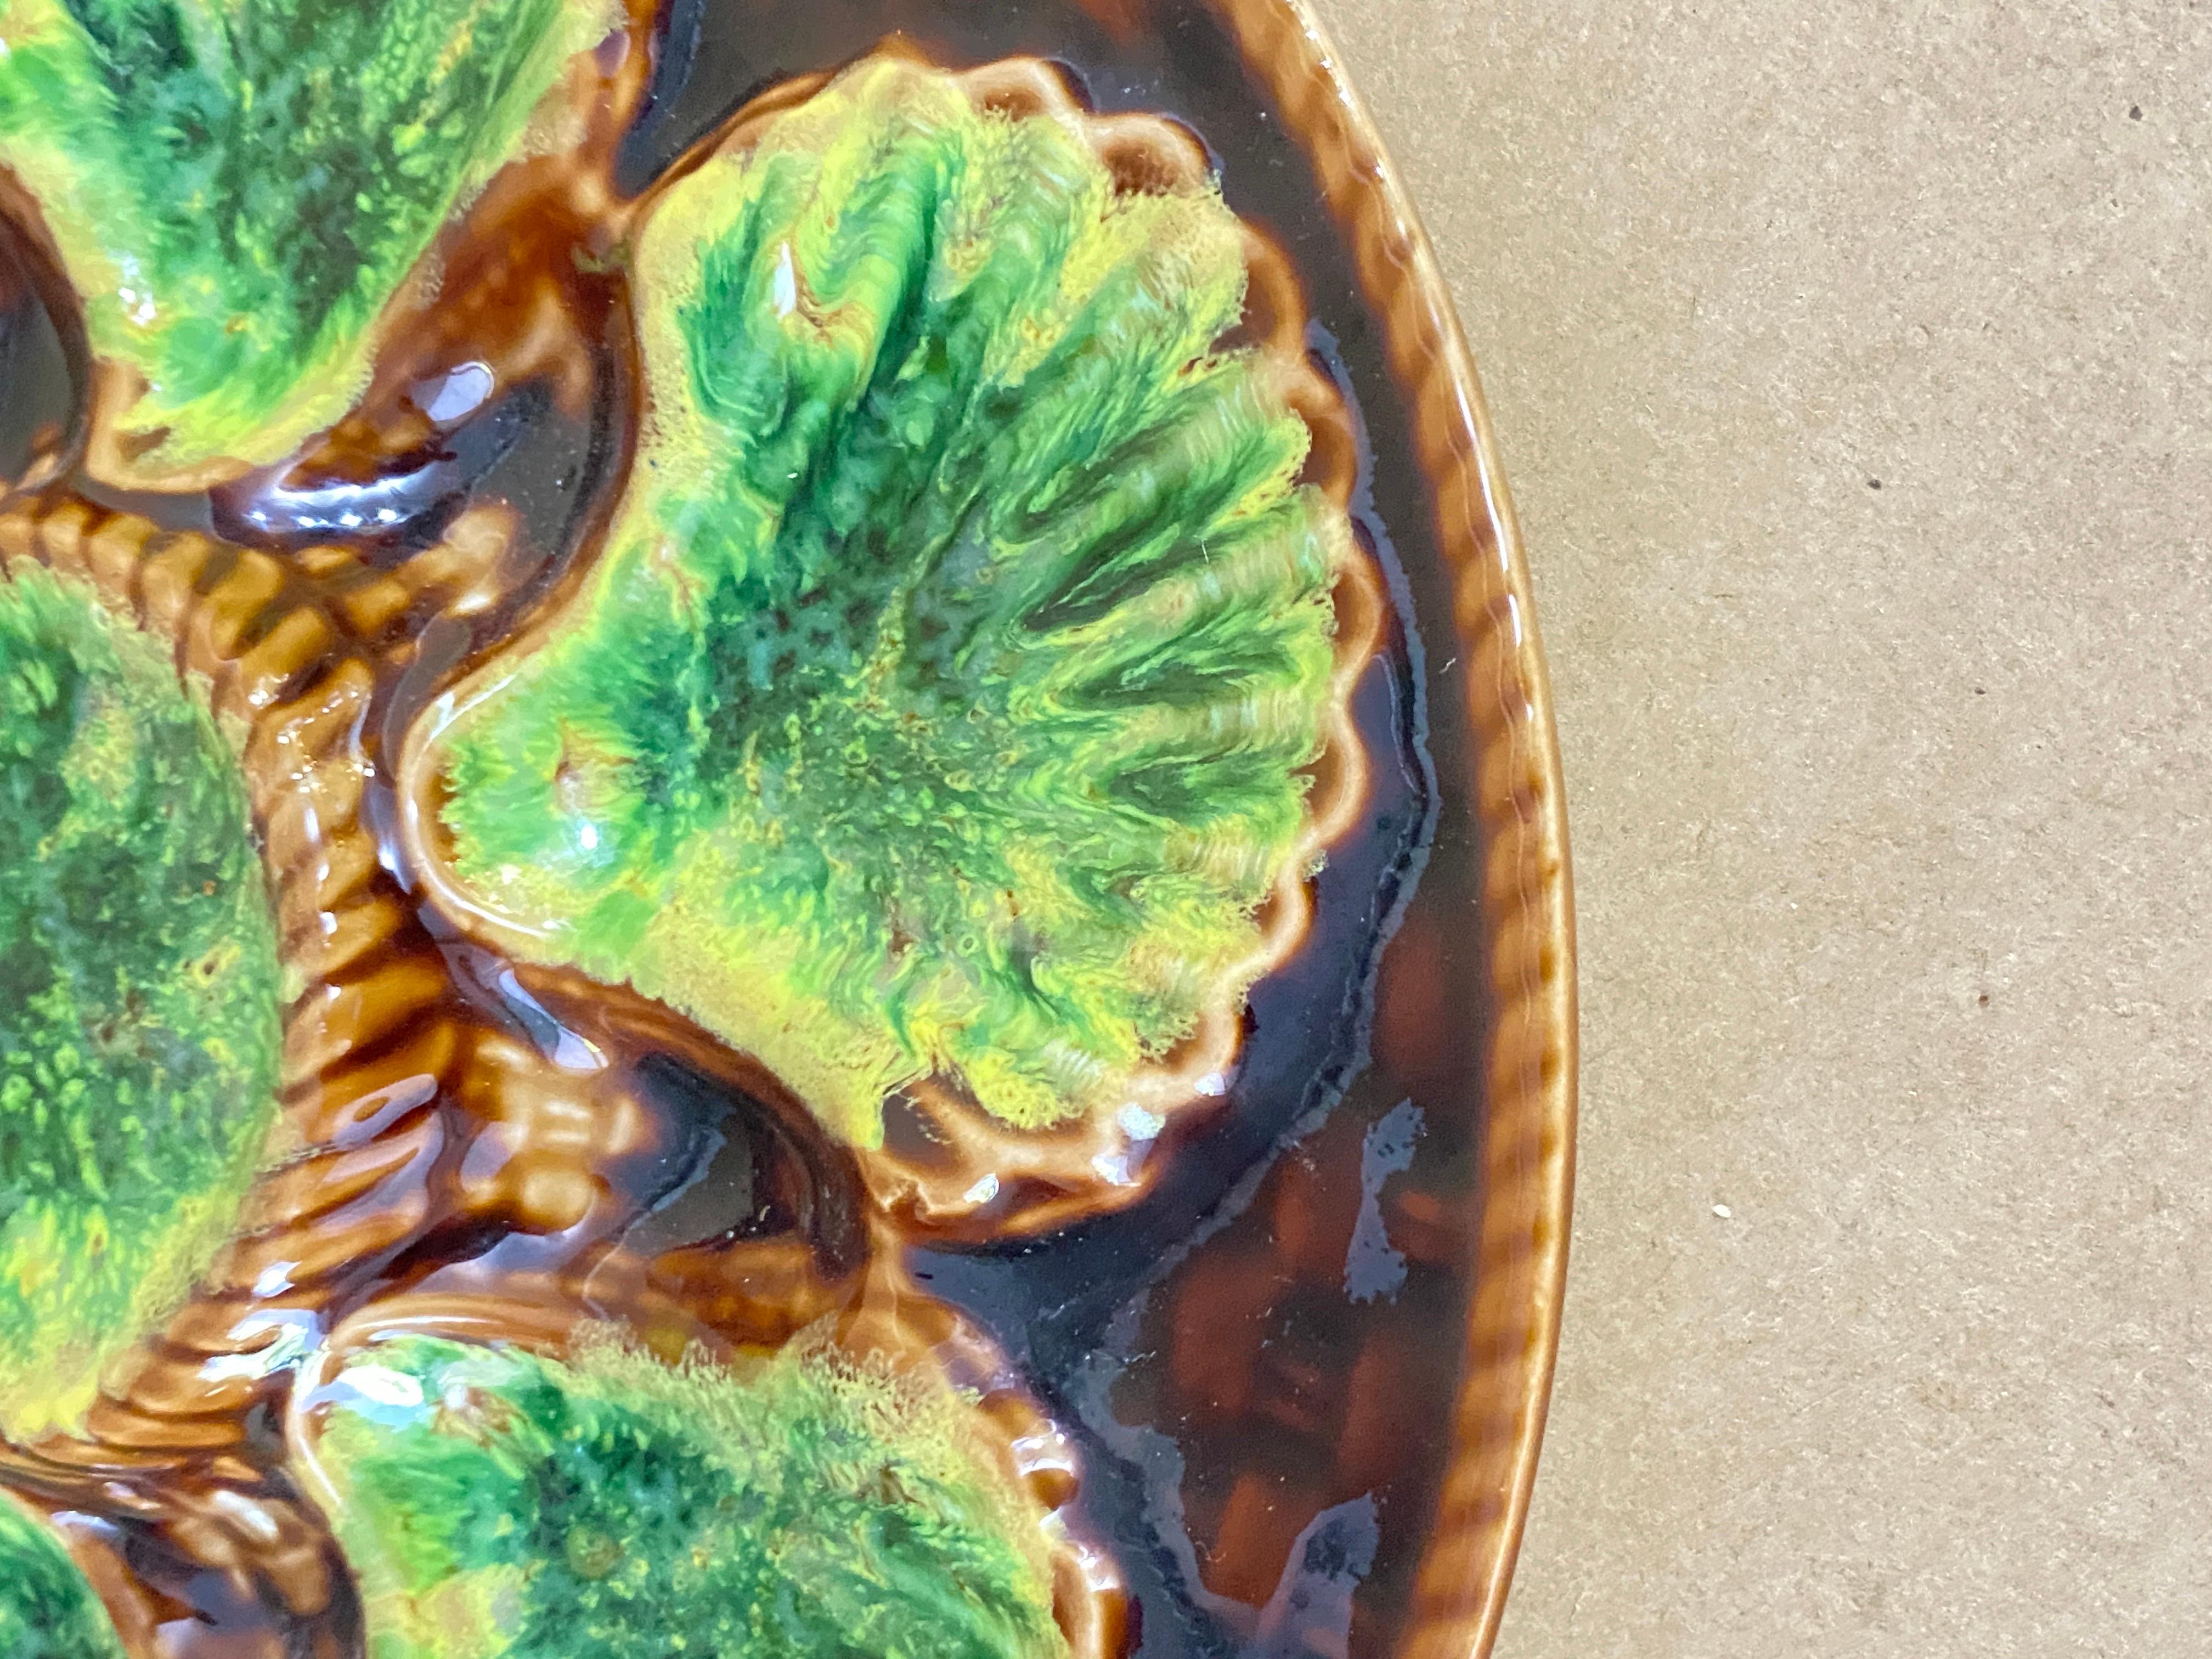 Plateau à huîtres dans le style de la majolique, réalisé en céramique, en vert et brun.
France début du 20ème siècle.
